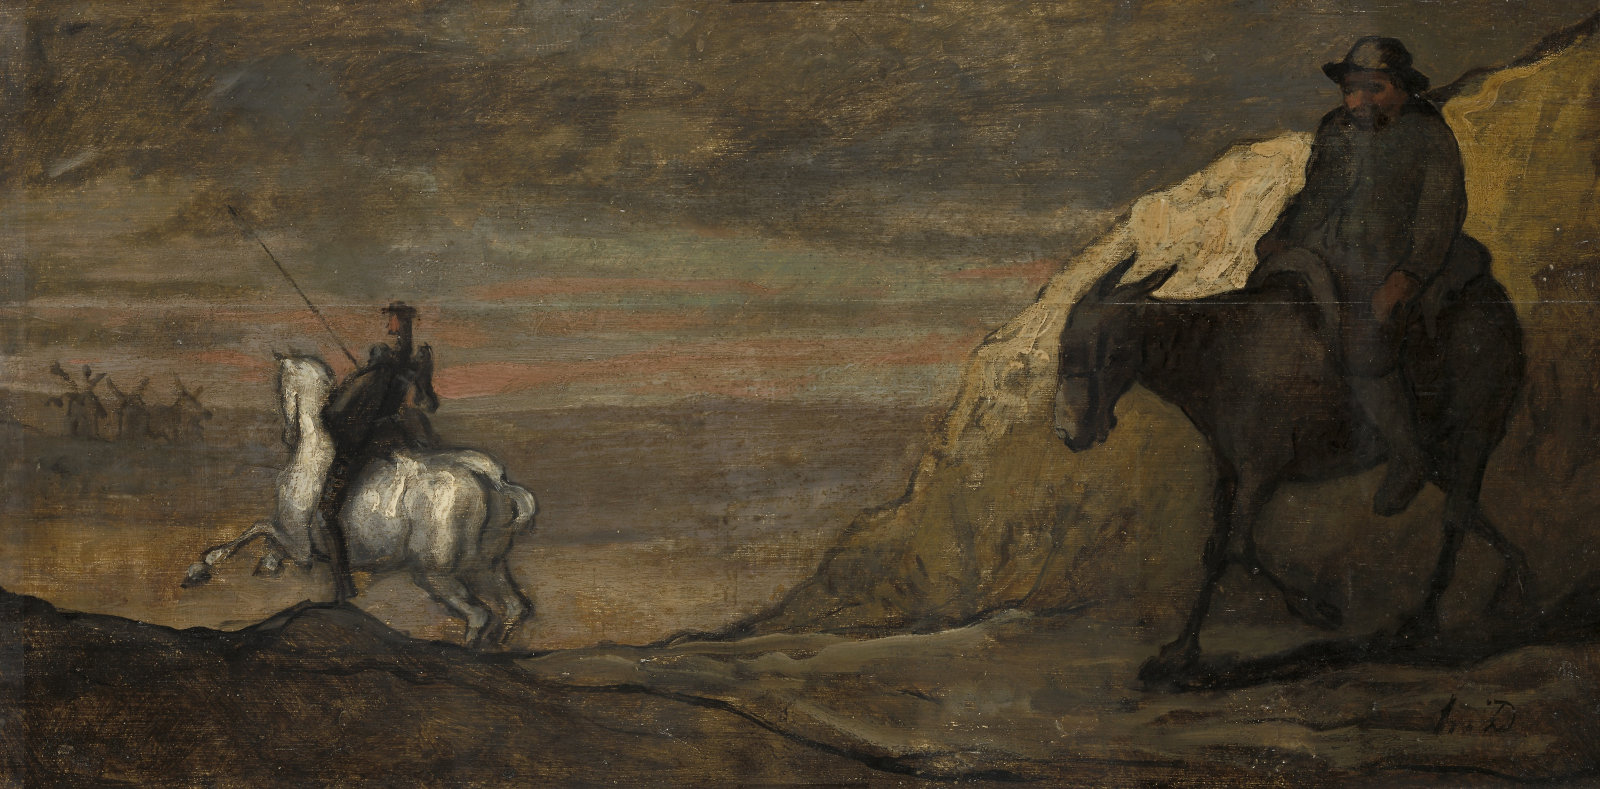 Honoré Daumien, Don Chisciotte e i mulini a vento, 1850